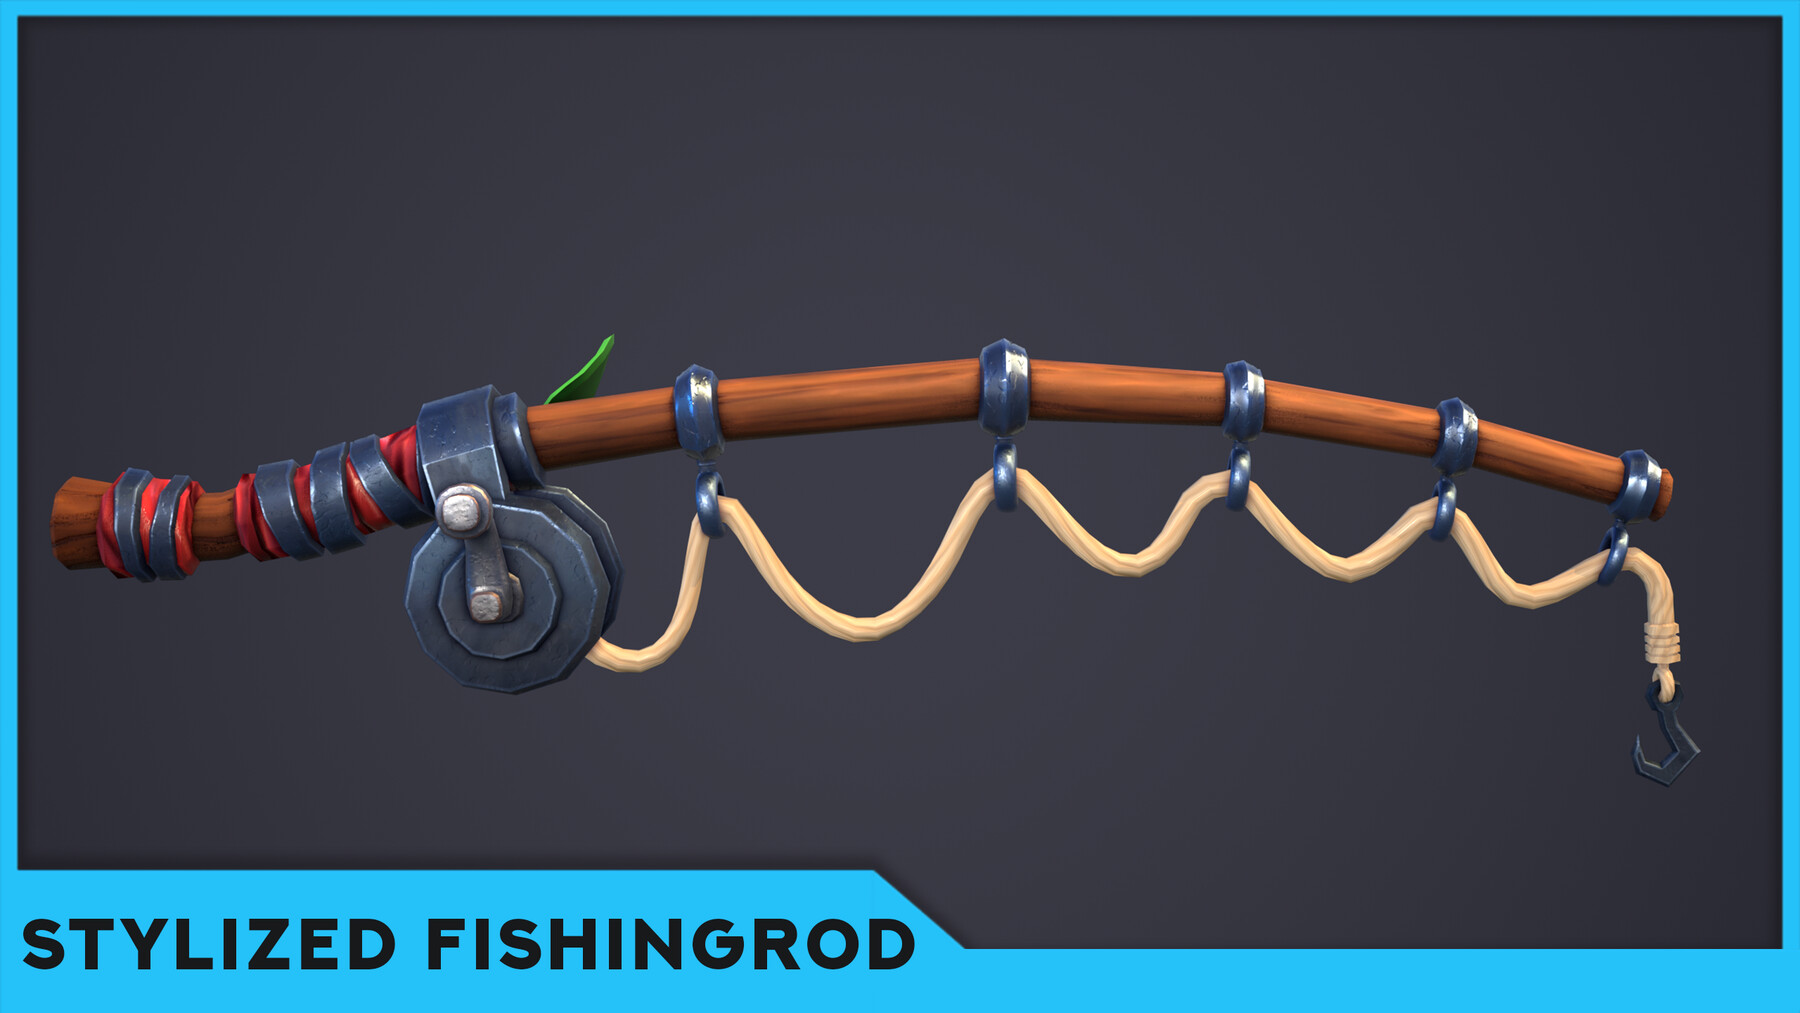 ArtStation - Stylized Fishing Rod - Lowpoly Model